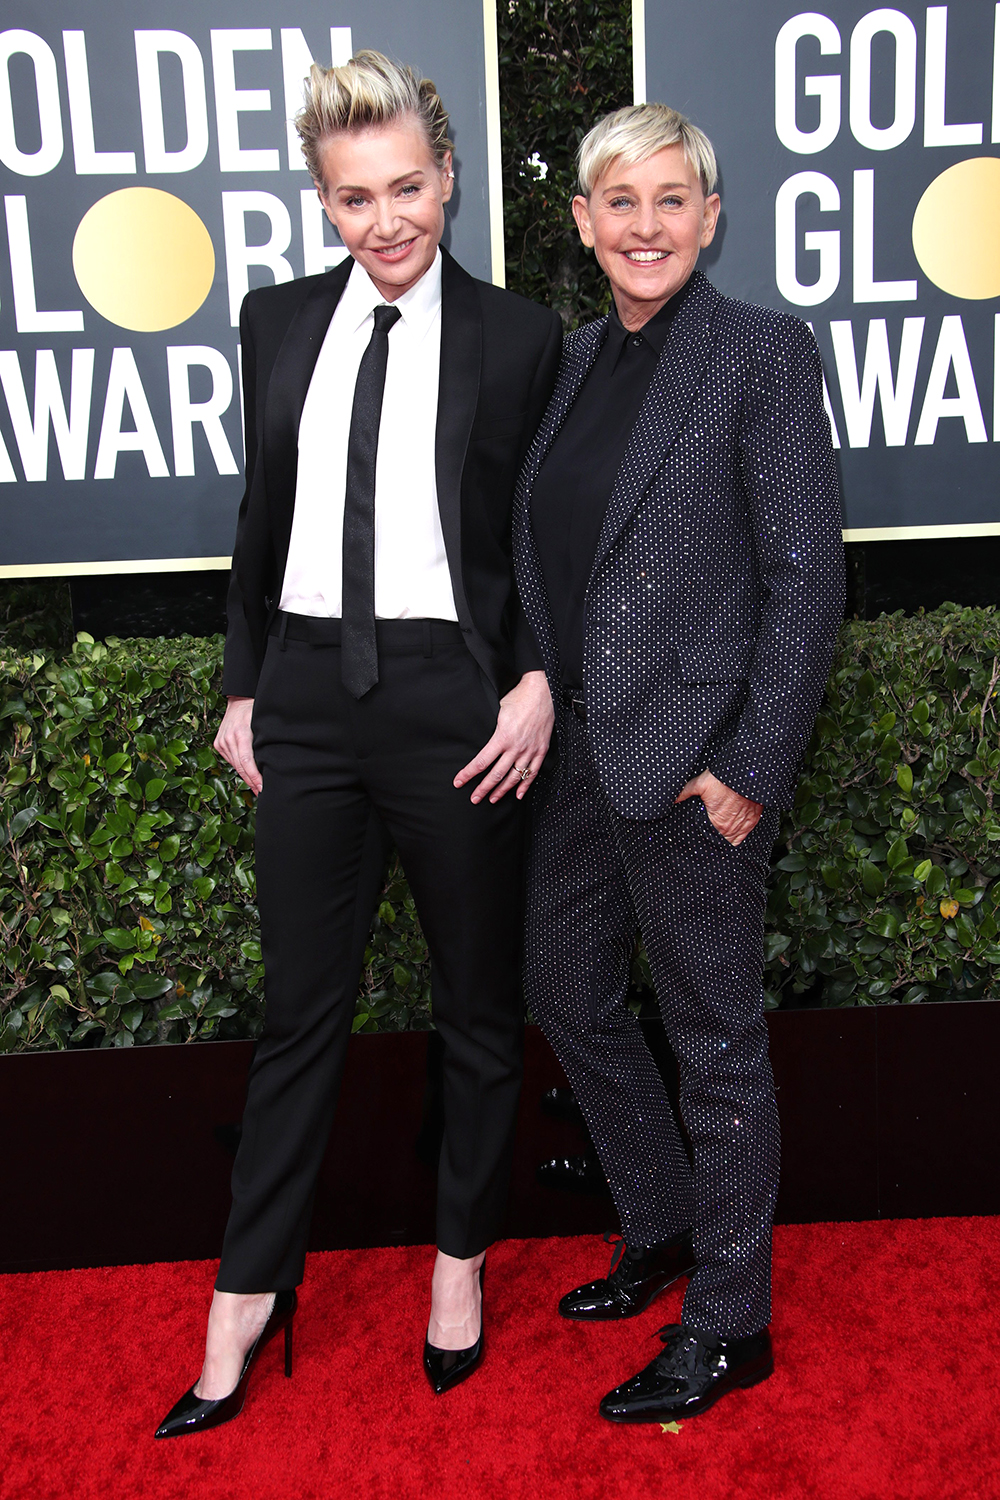 Portia de Rossi and Ellen DeGeneres77th Annual Golden Globe Awards, Arrivals, Los Angeles, USA - Jan 05, 2020